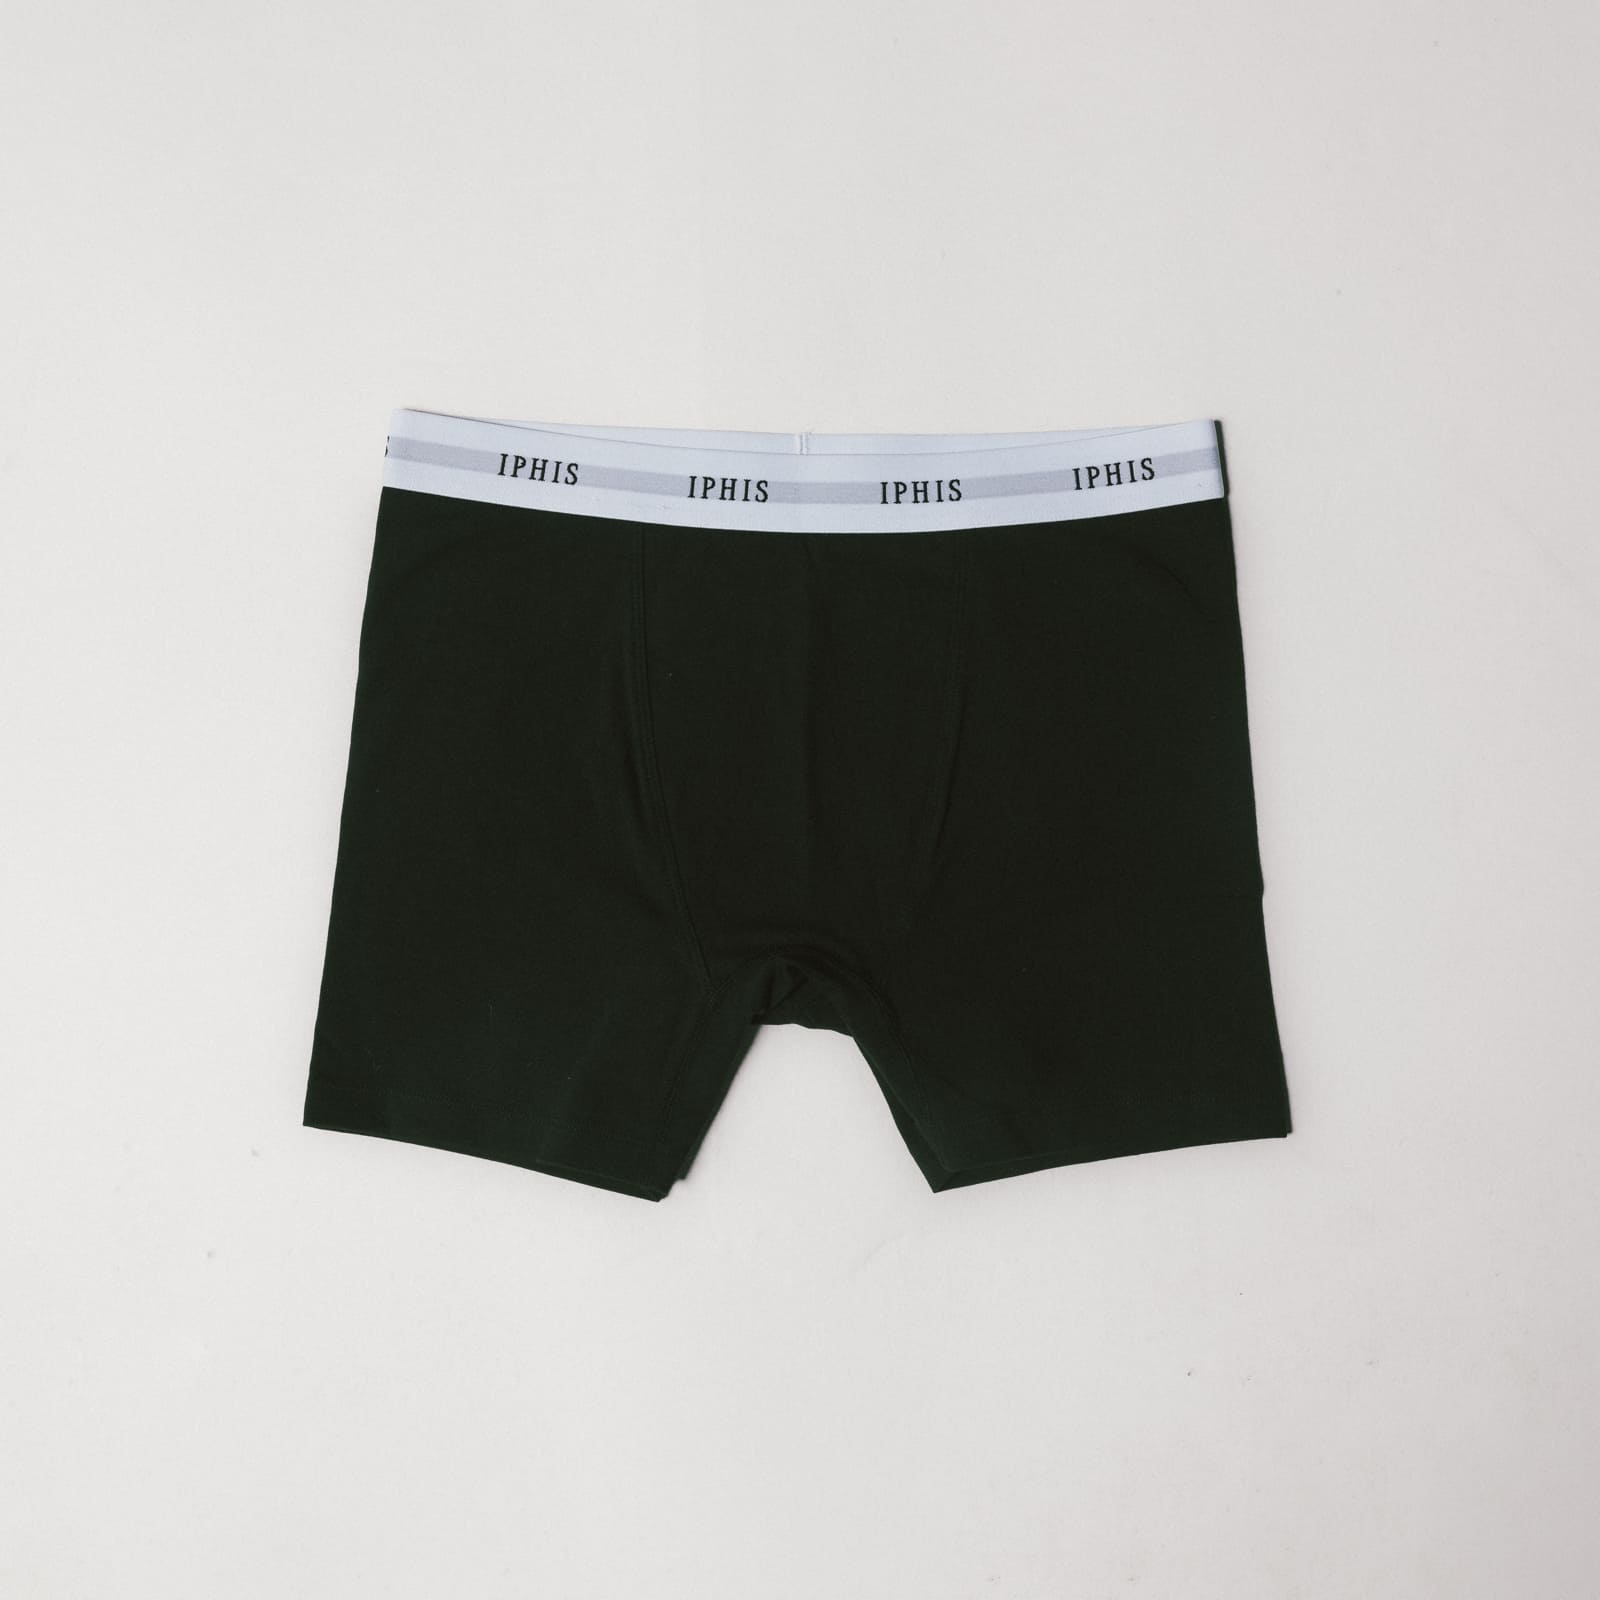 Standard Boxer Brief, Underwear